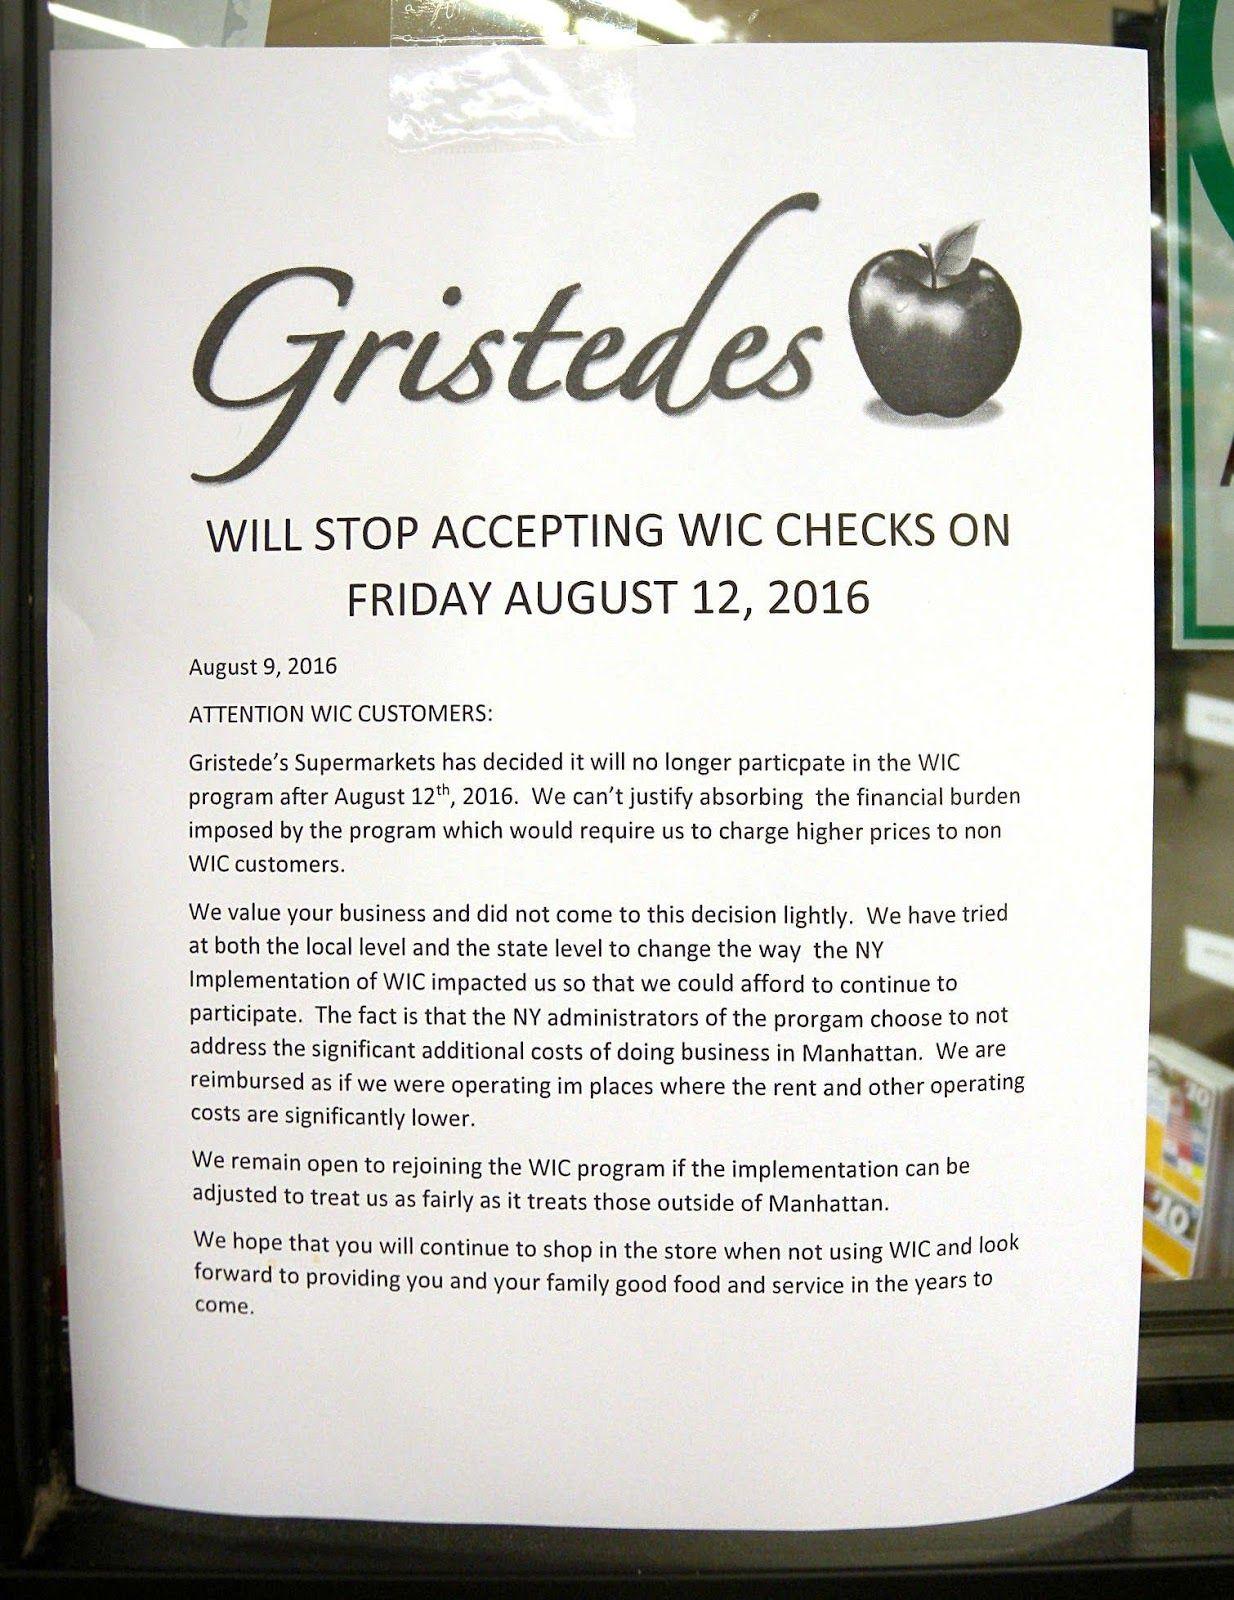 Gristedes Logo - Roosevelt Islander Online: Gristedes Supermarkets Stops Accepting NY ...